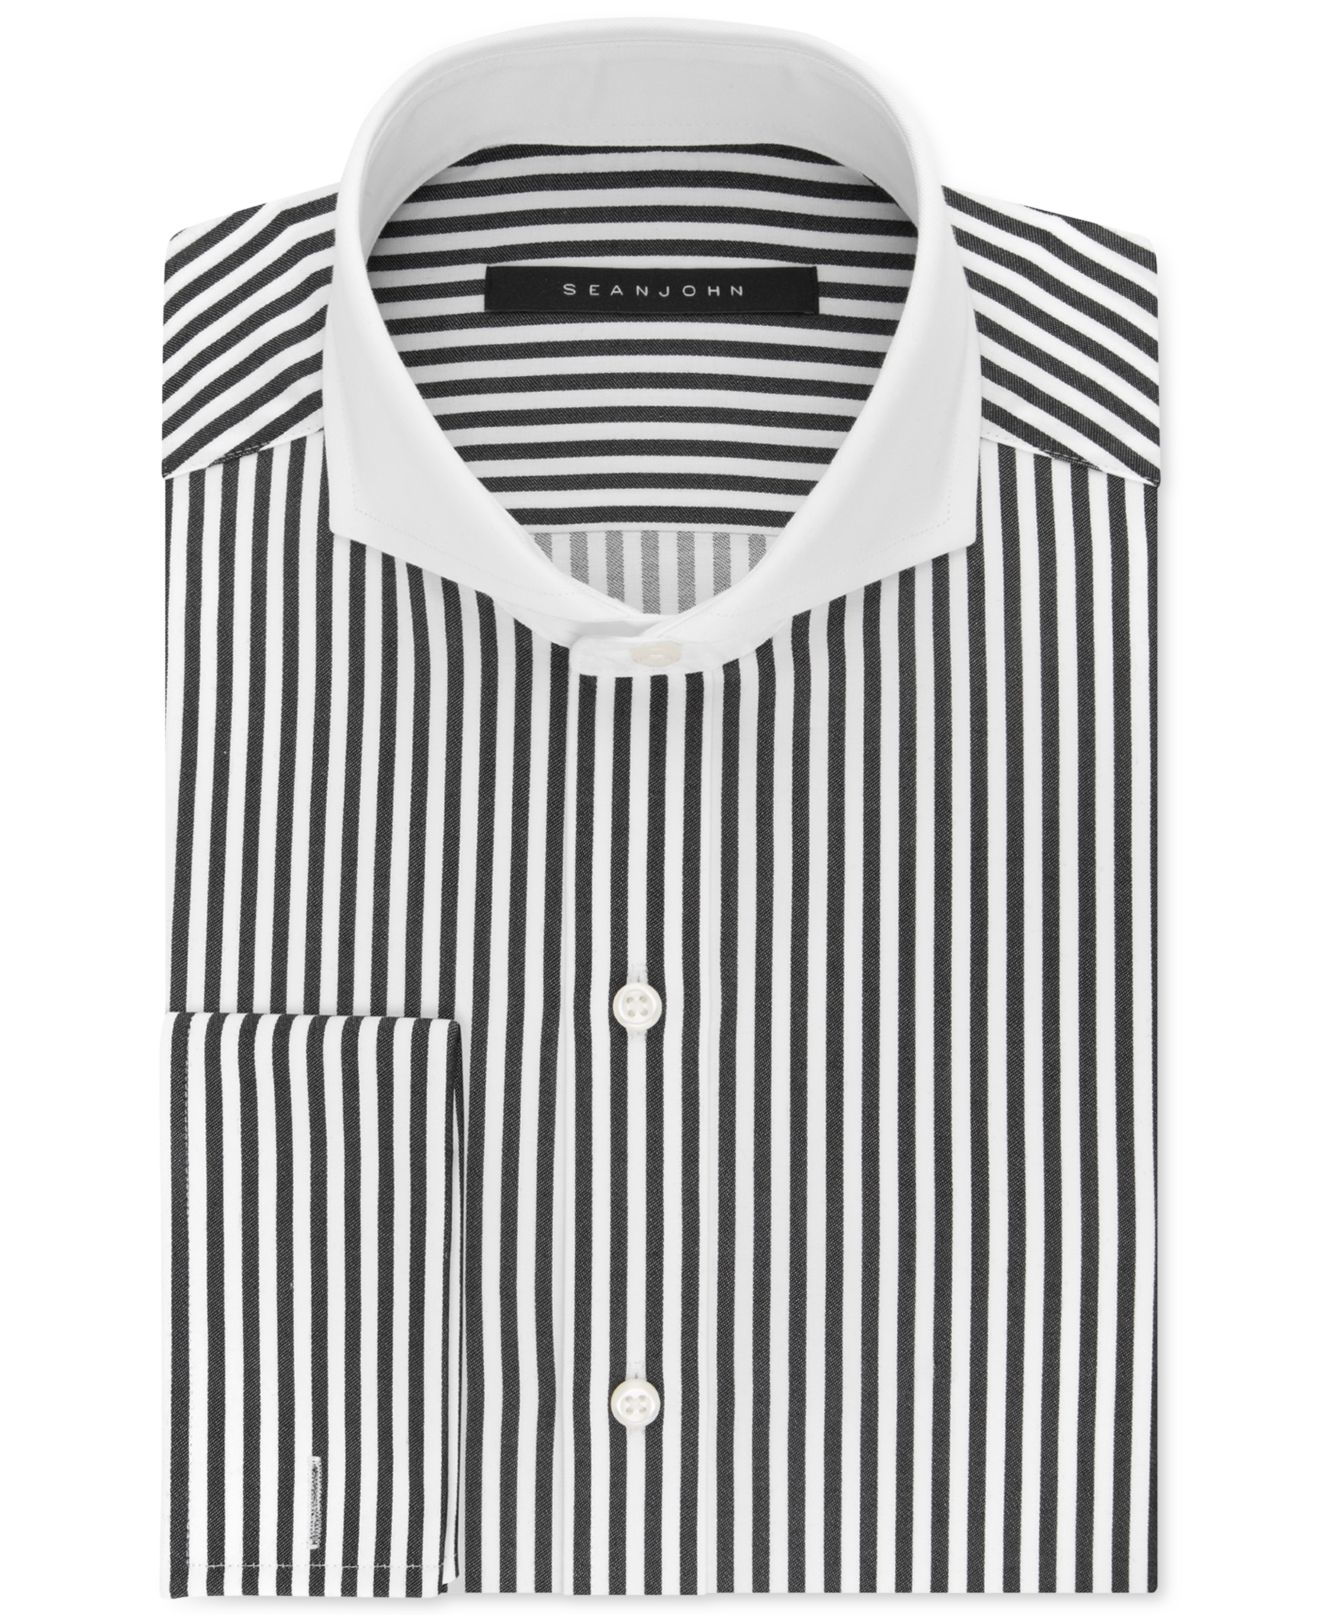 White Stripe Dress Shirt for Men ...